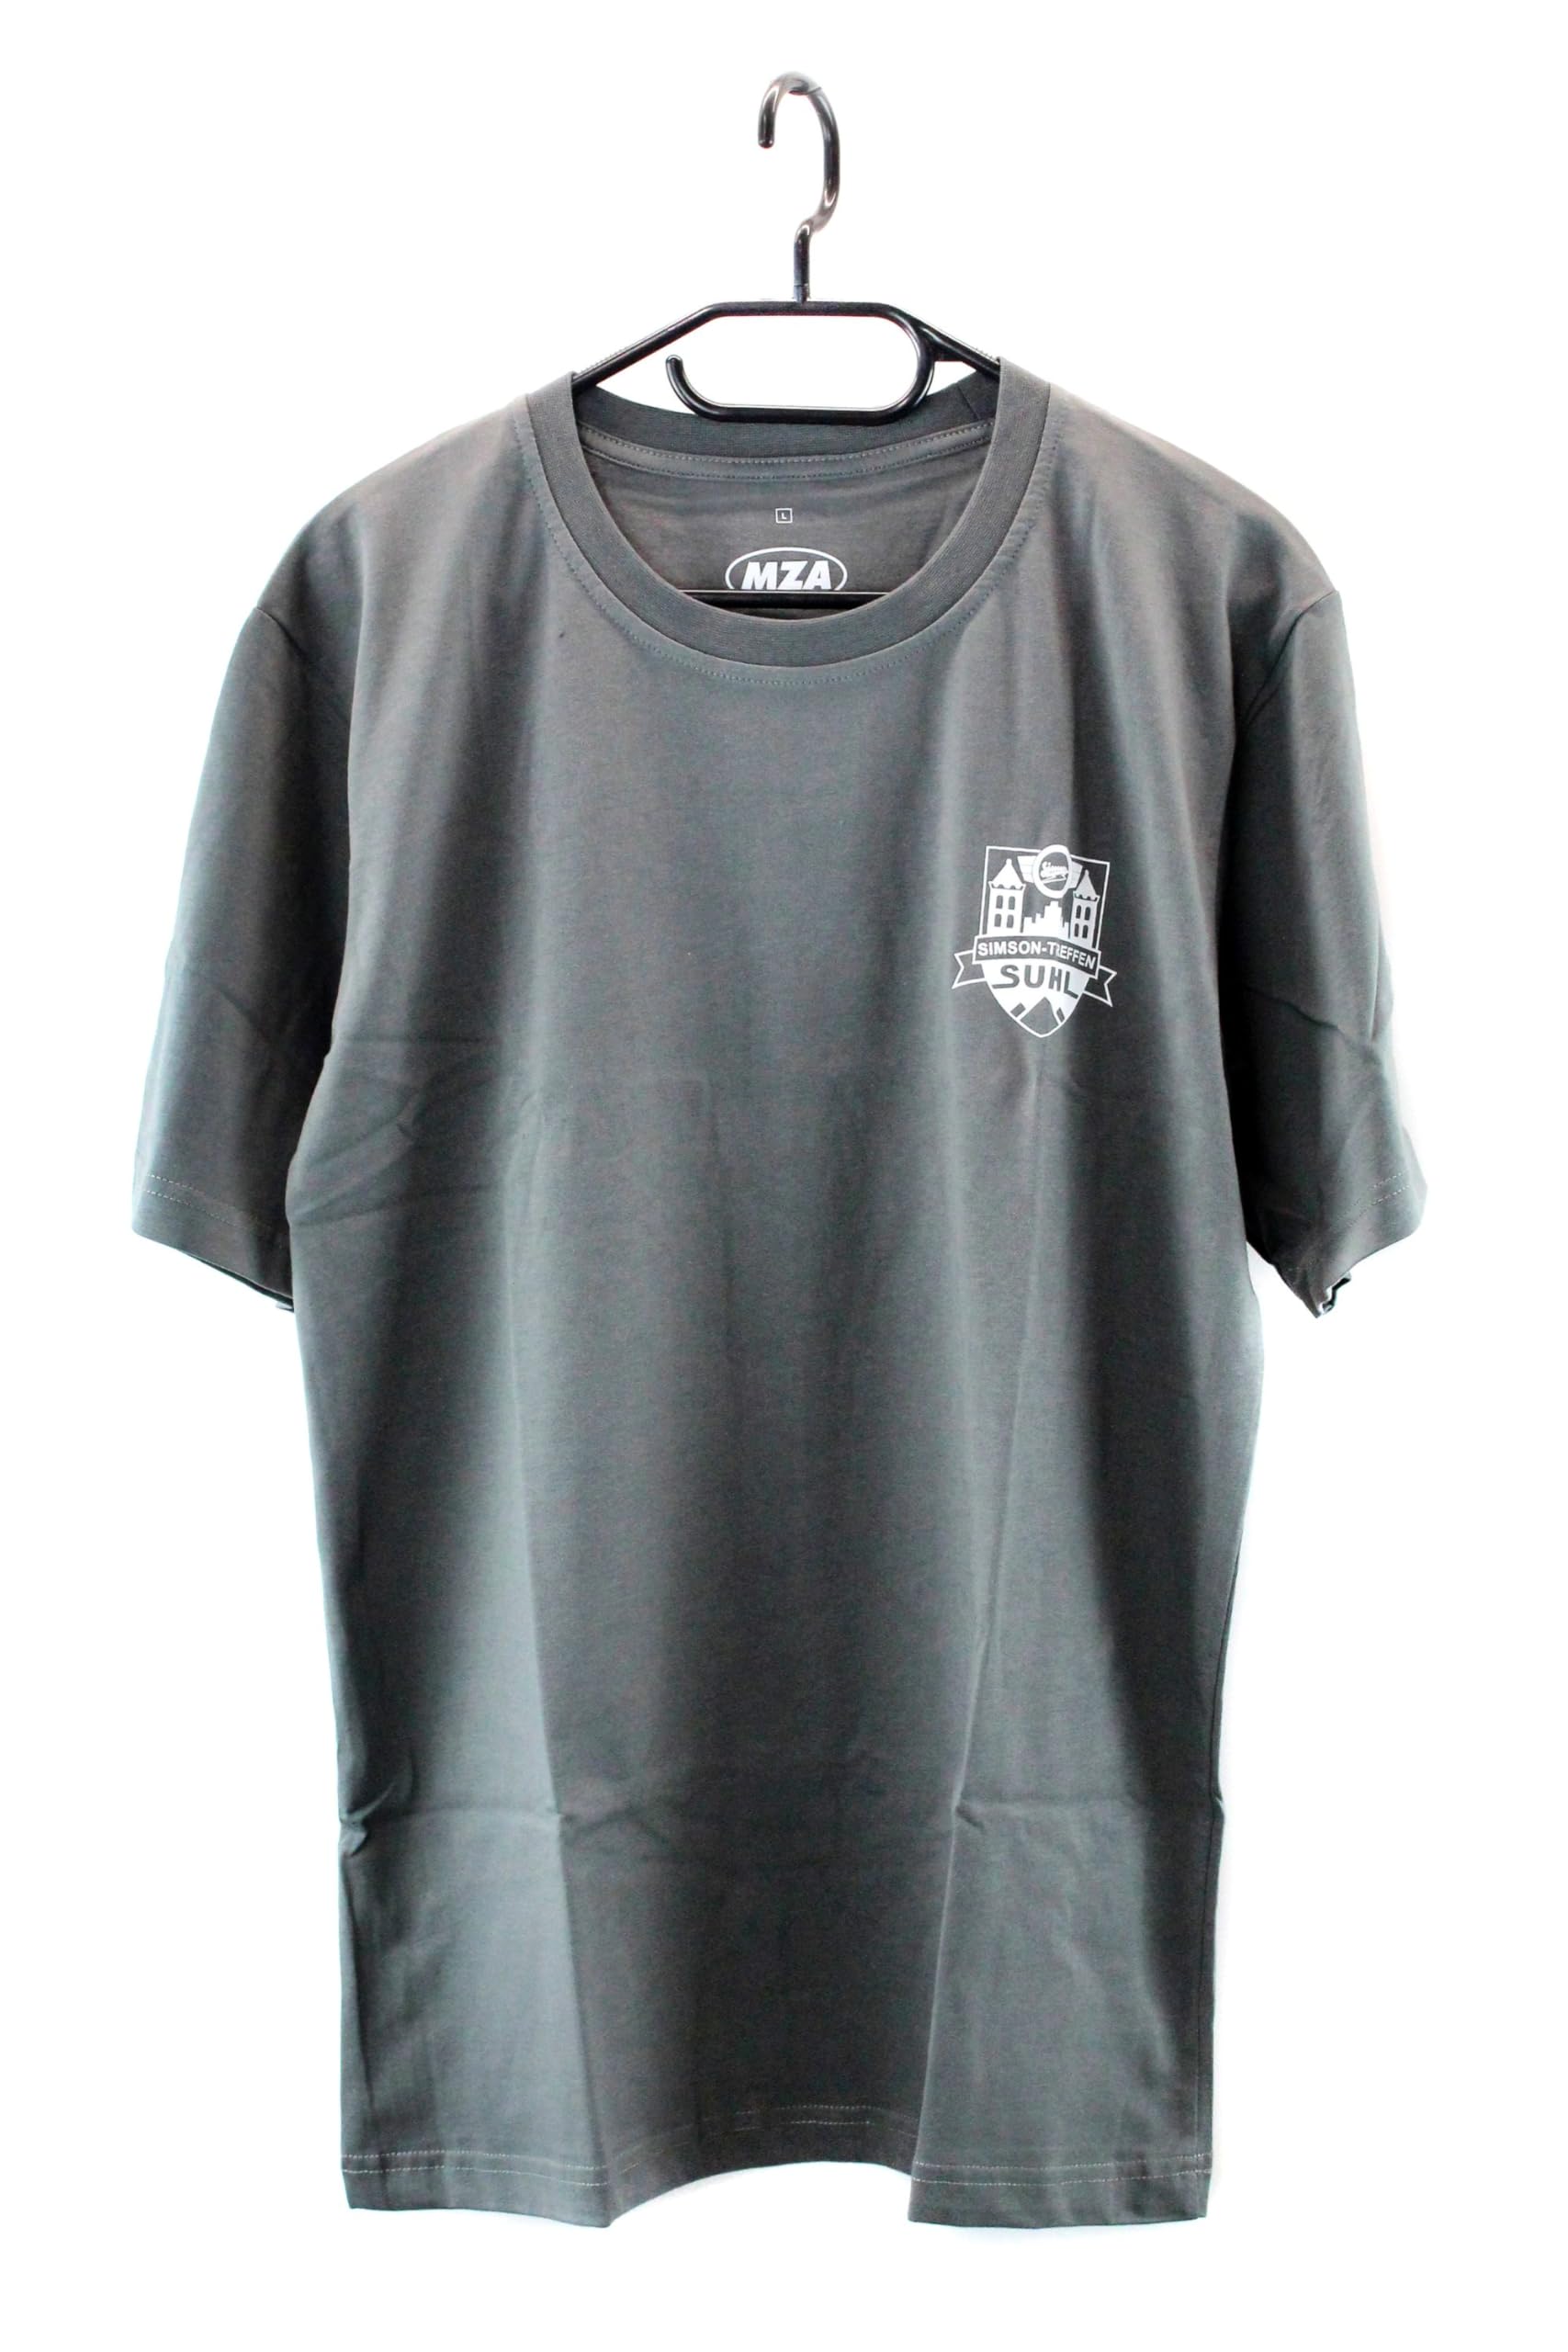 T-Shirt, Farbe: Grau, Größe: M - Motiv: SIMSON - Treffen Suhl von MZA